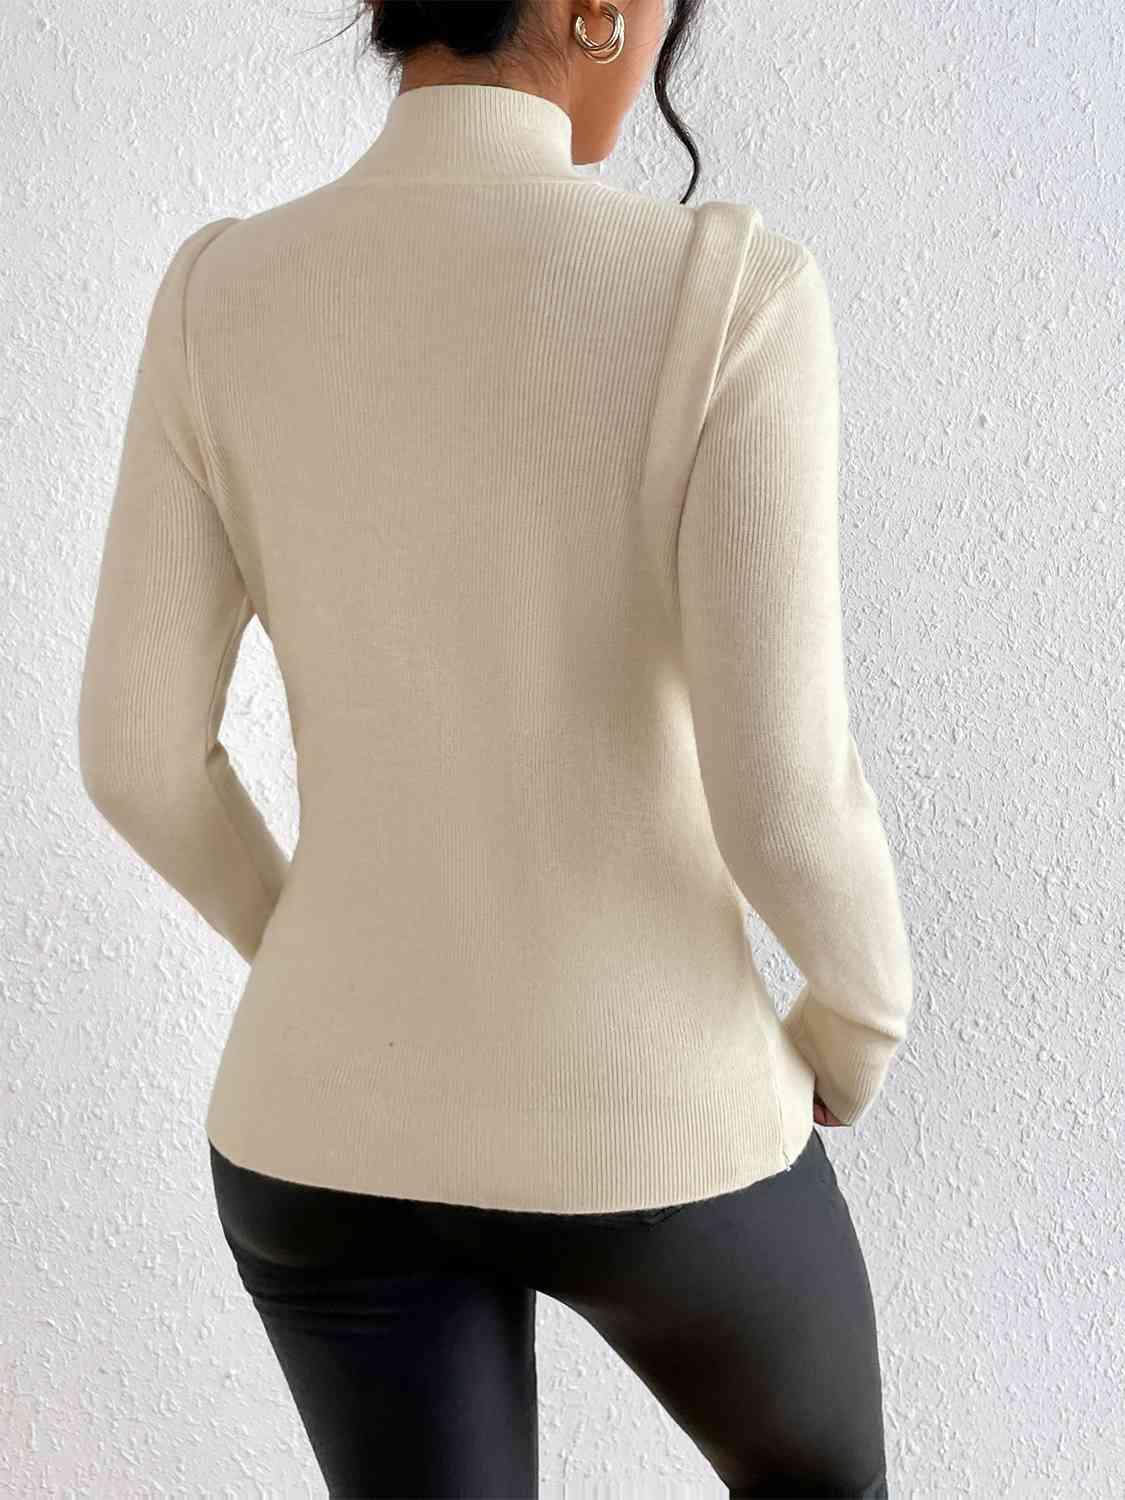 Studded Shoulder Detail Turtleneck Knit Sweater-MXSTUDIO.COM